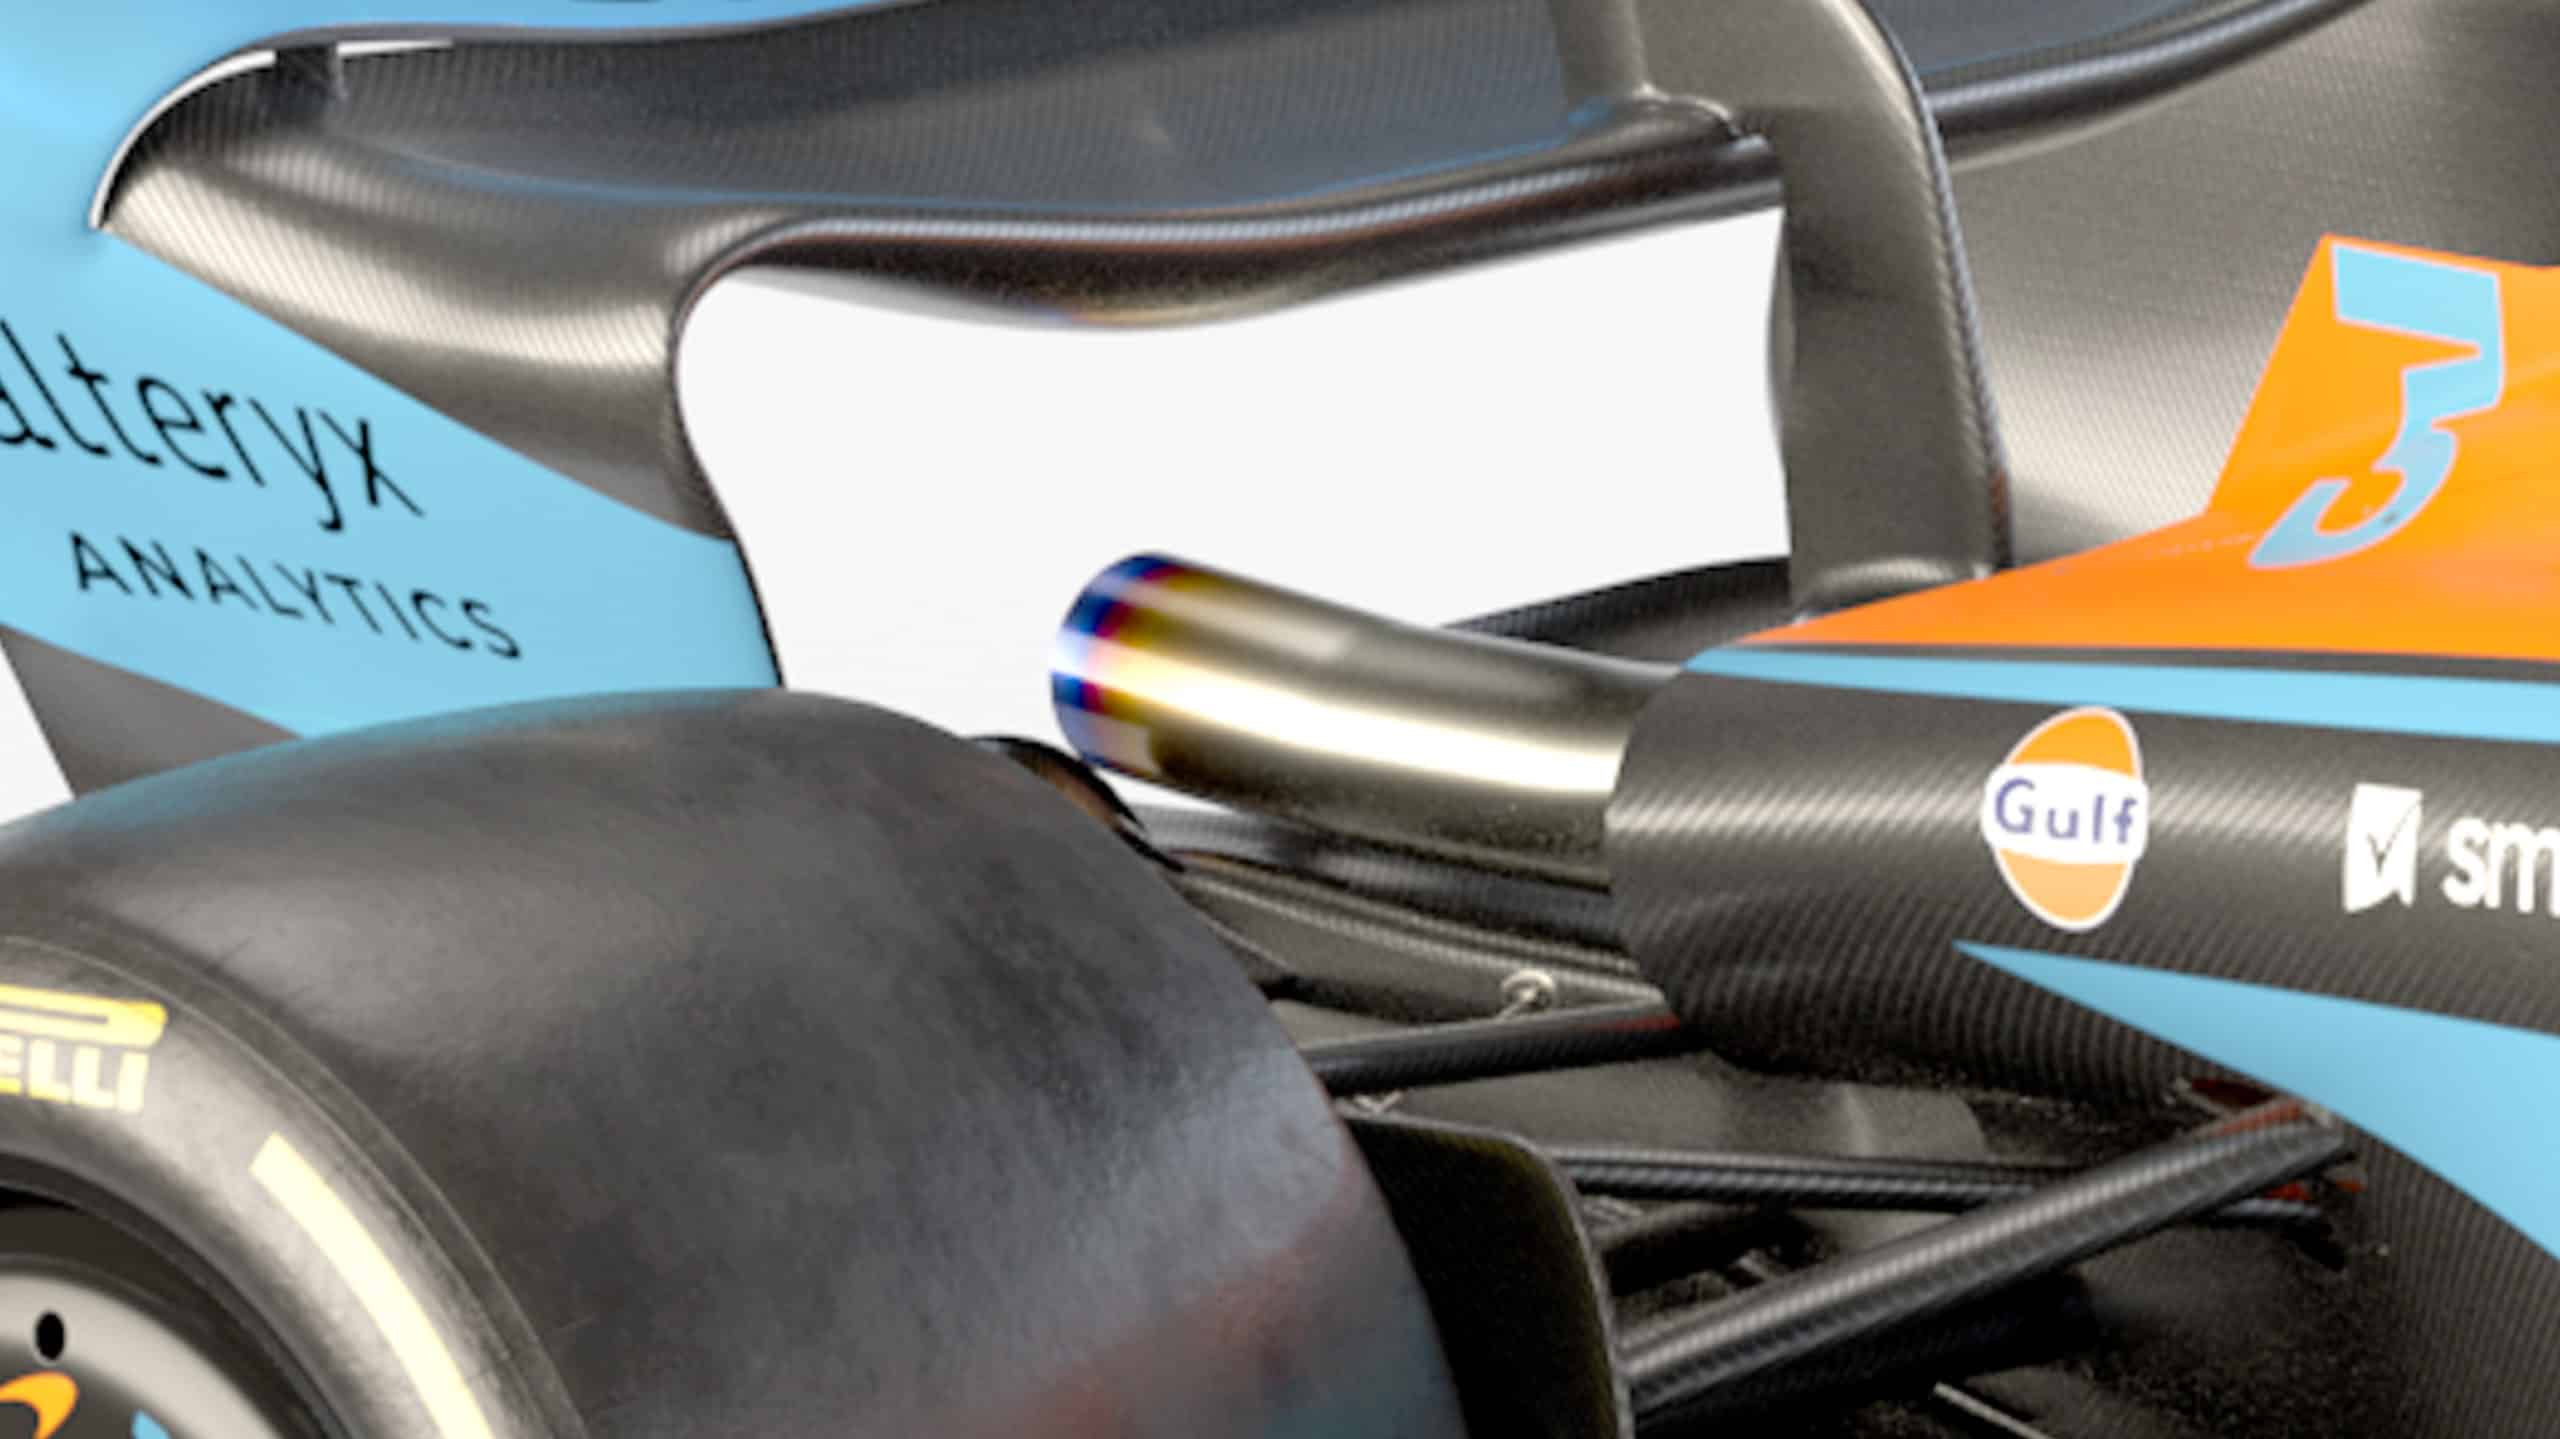 2022-McLaren-car-rear-scaled